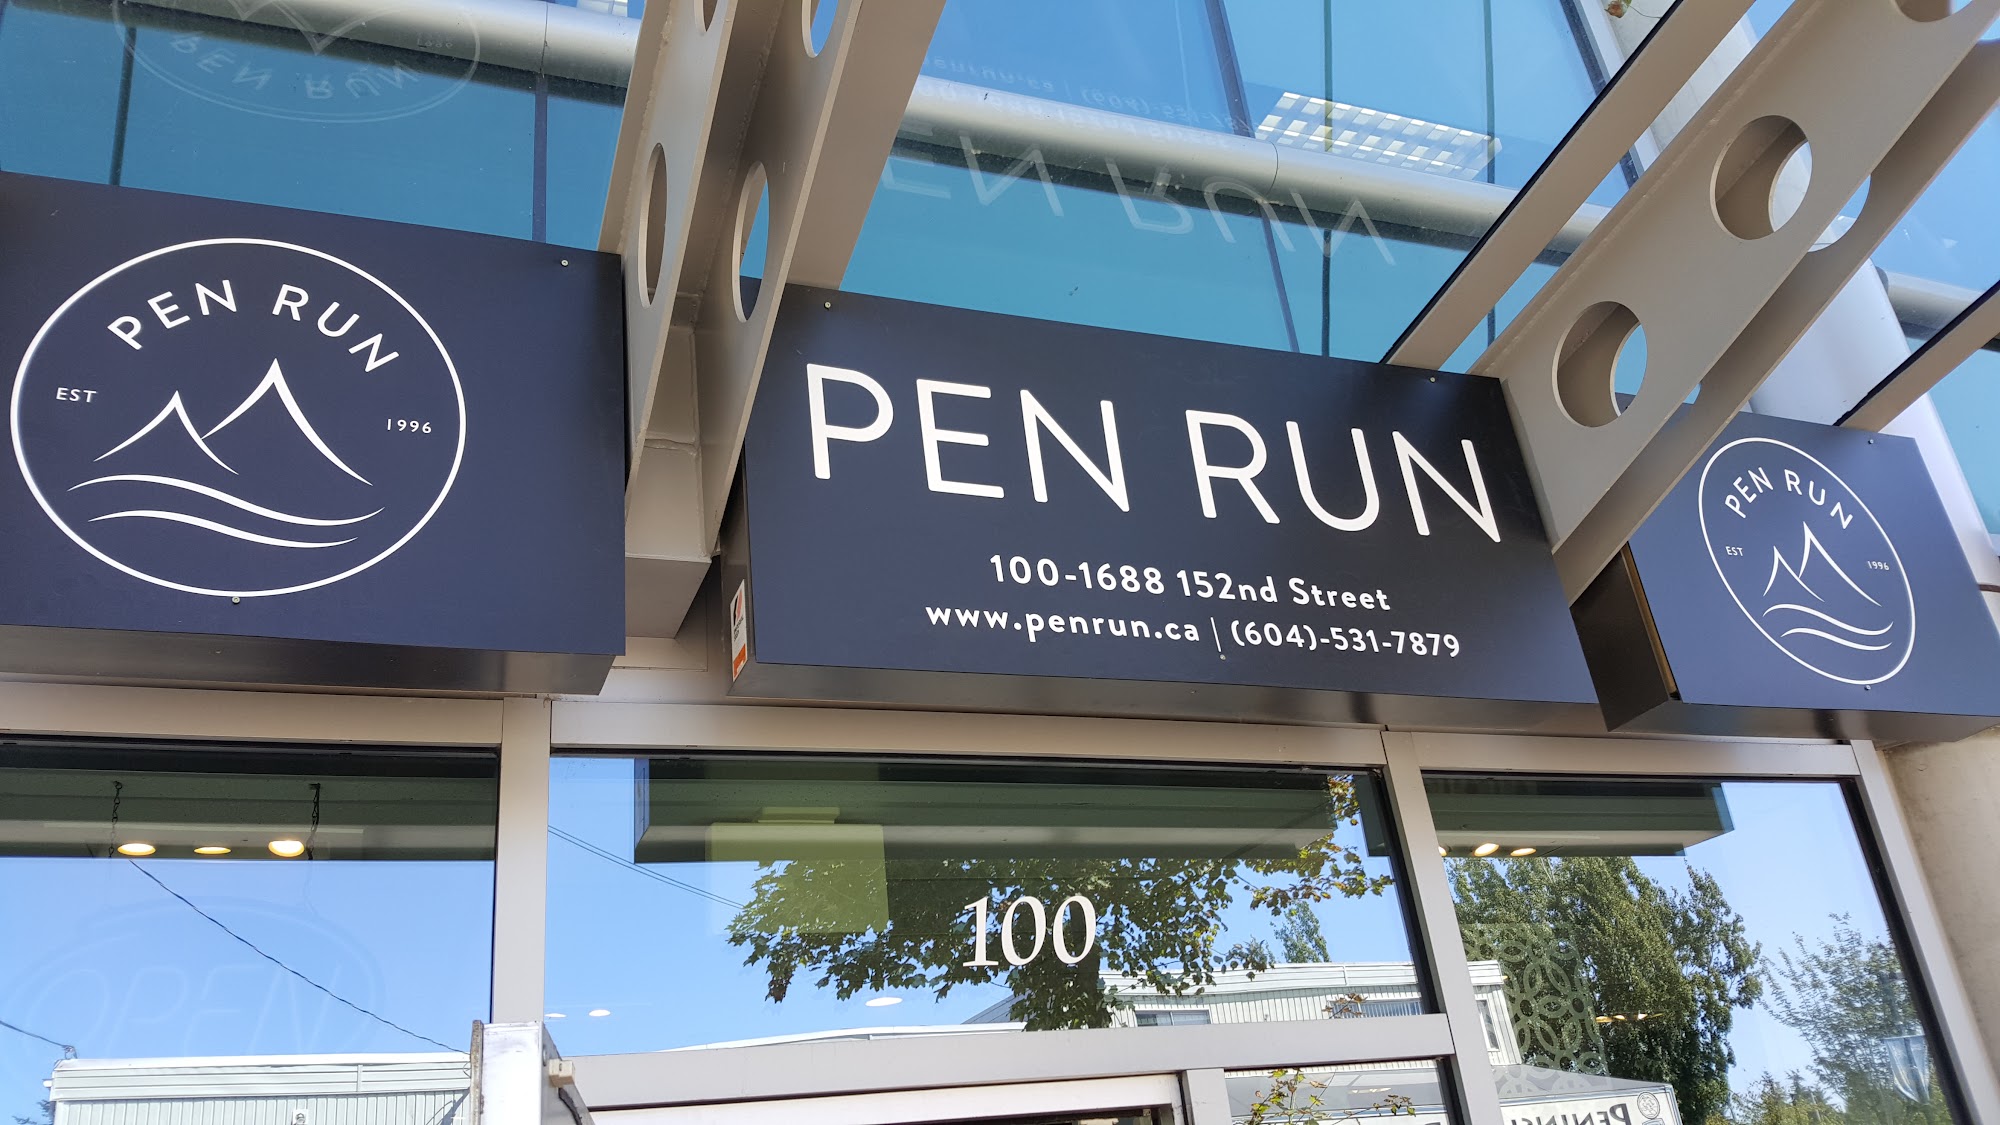 PEN RUN (Peninsula Runners)